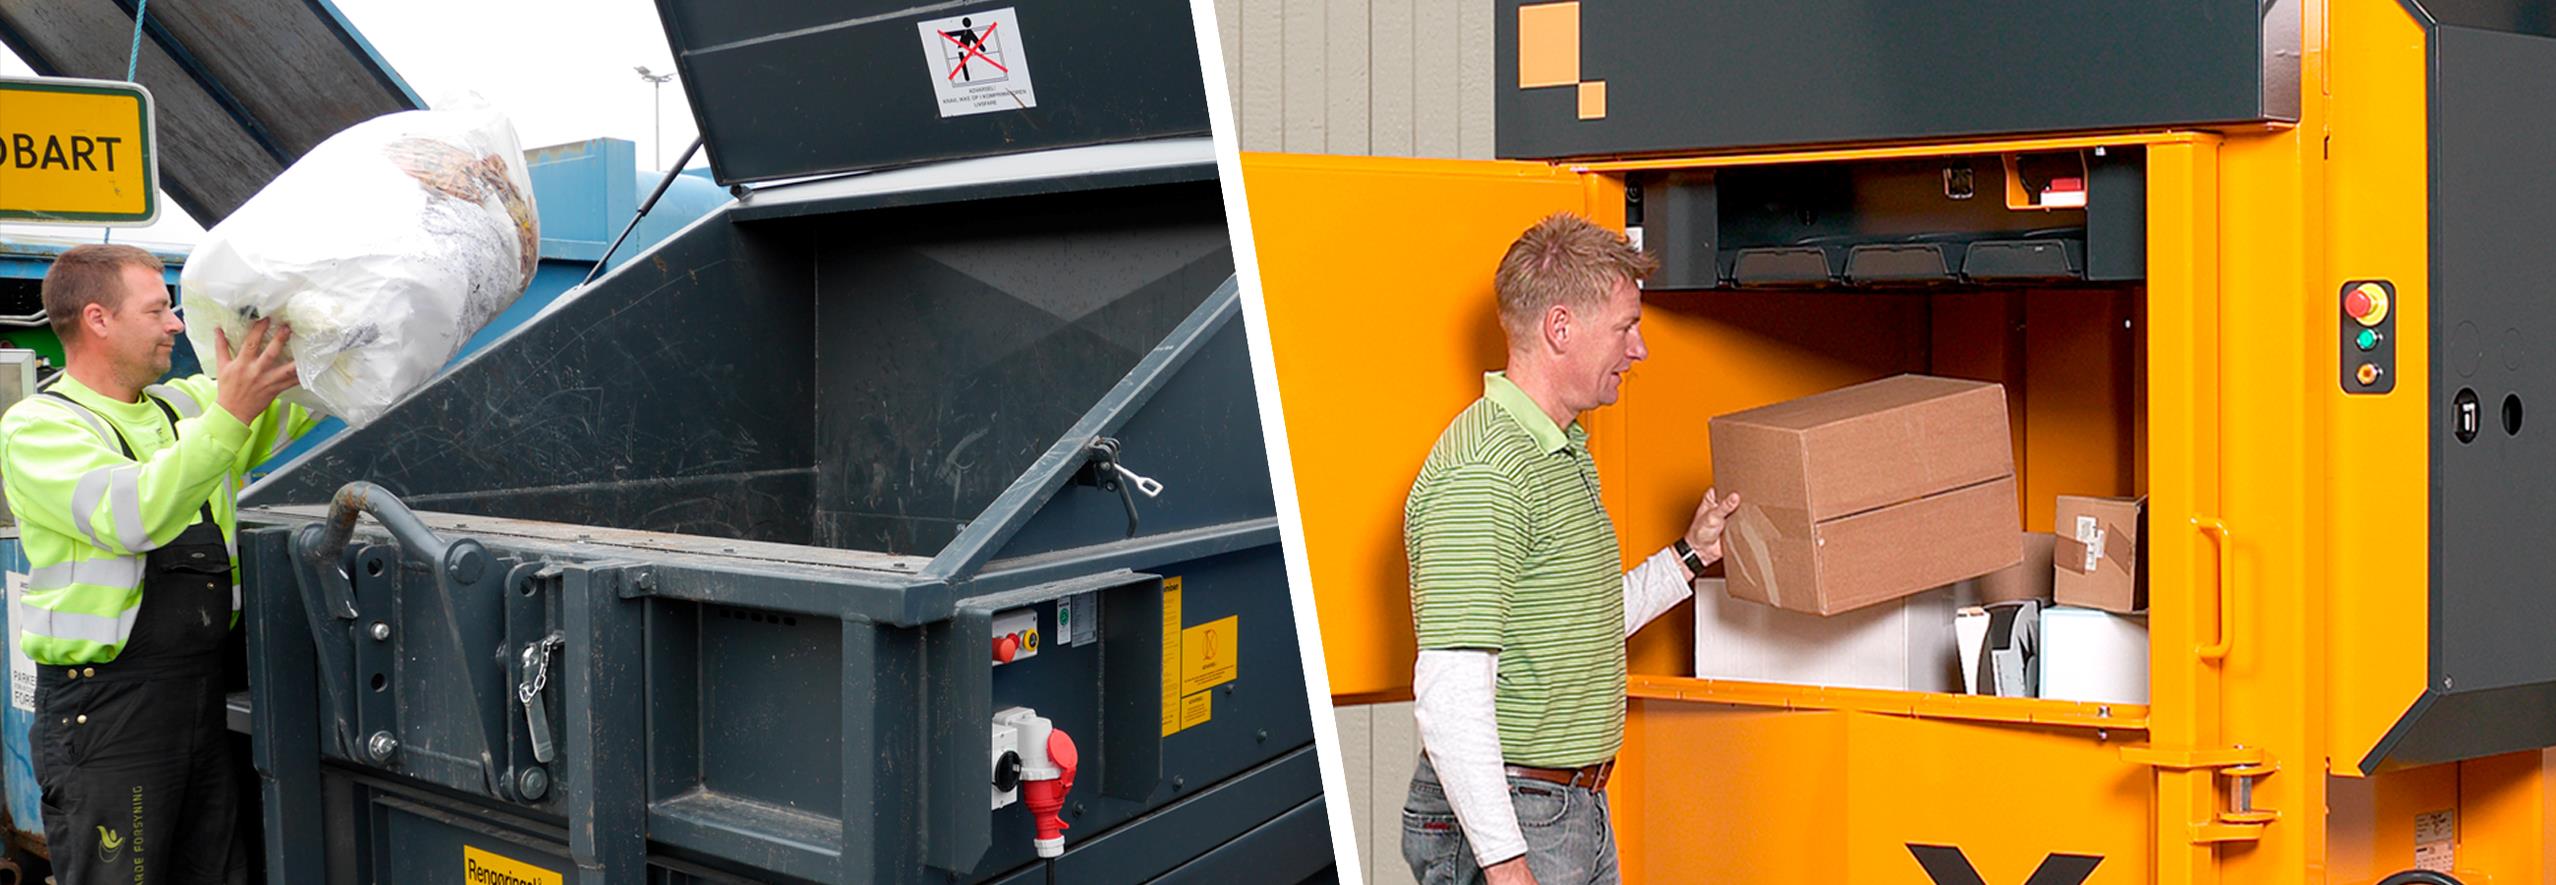 Mand smidder affaldssæk i komprimator. Mand fylder papkasse i gul pappresser